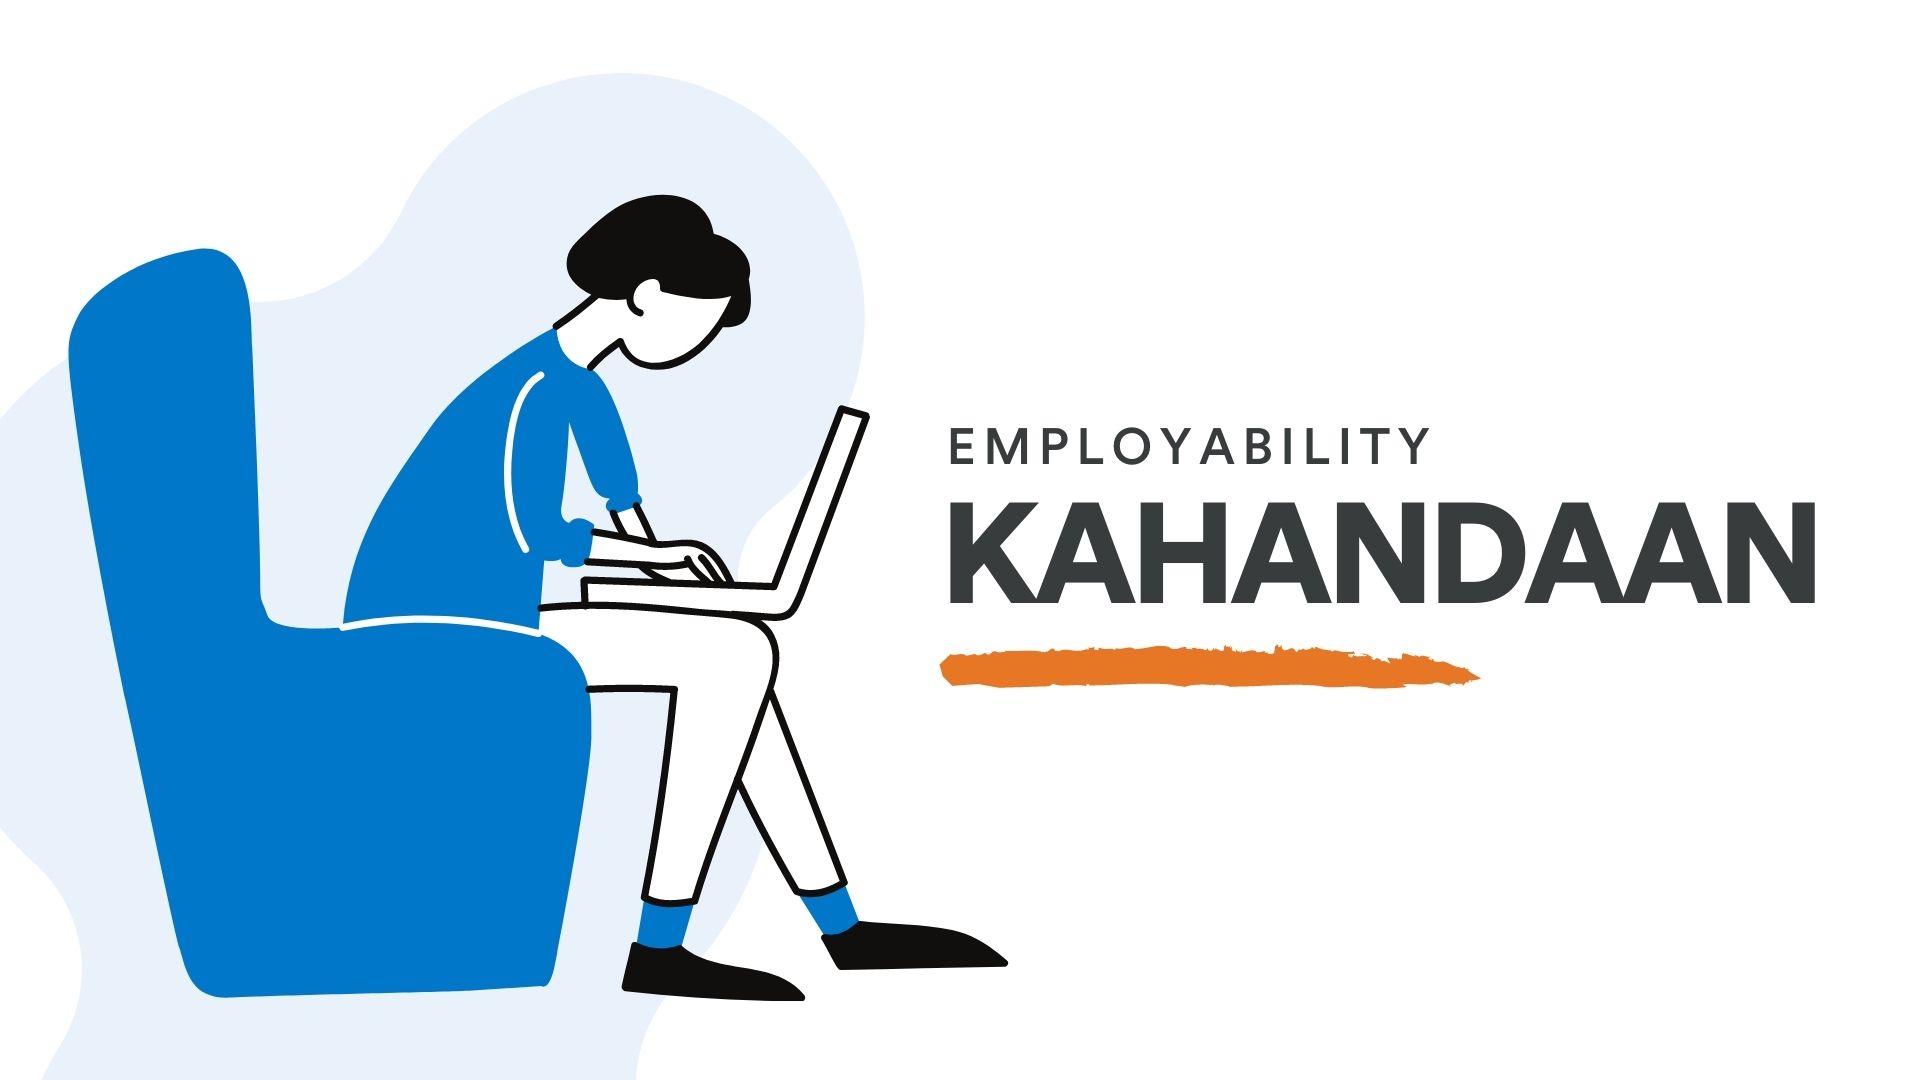 Kahandaan: Employability